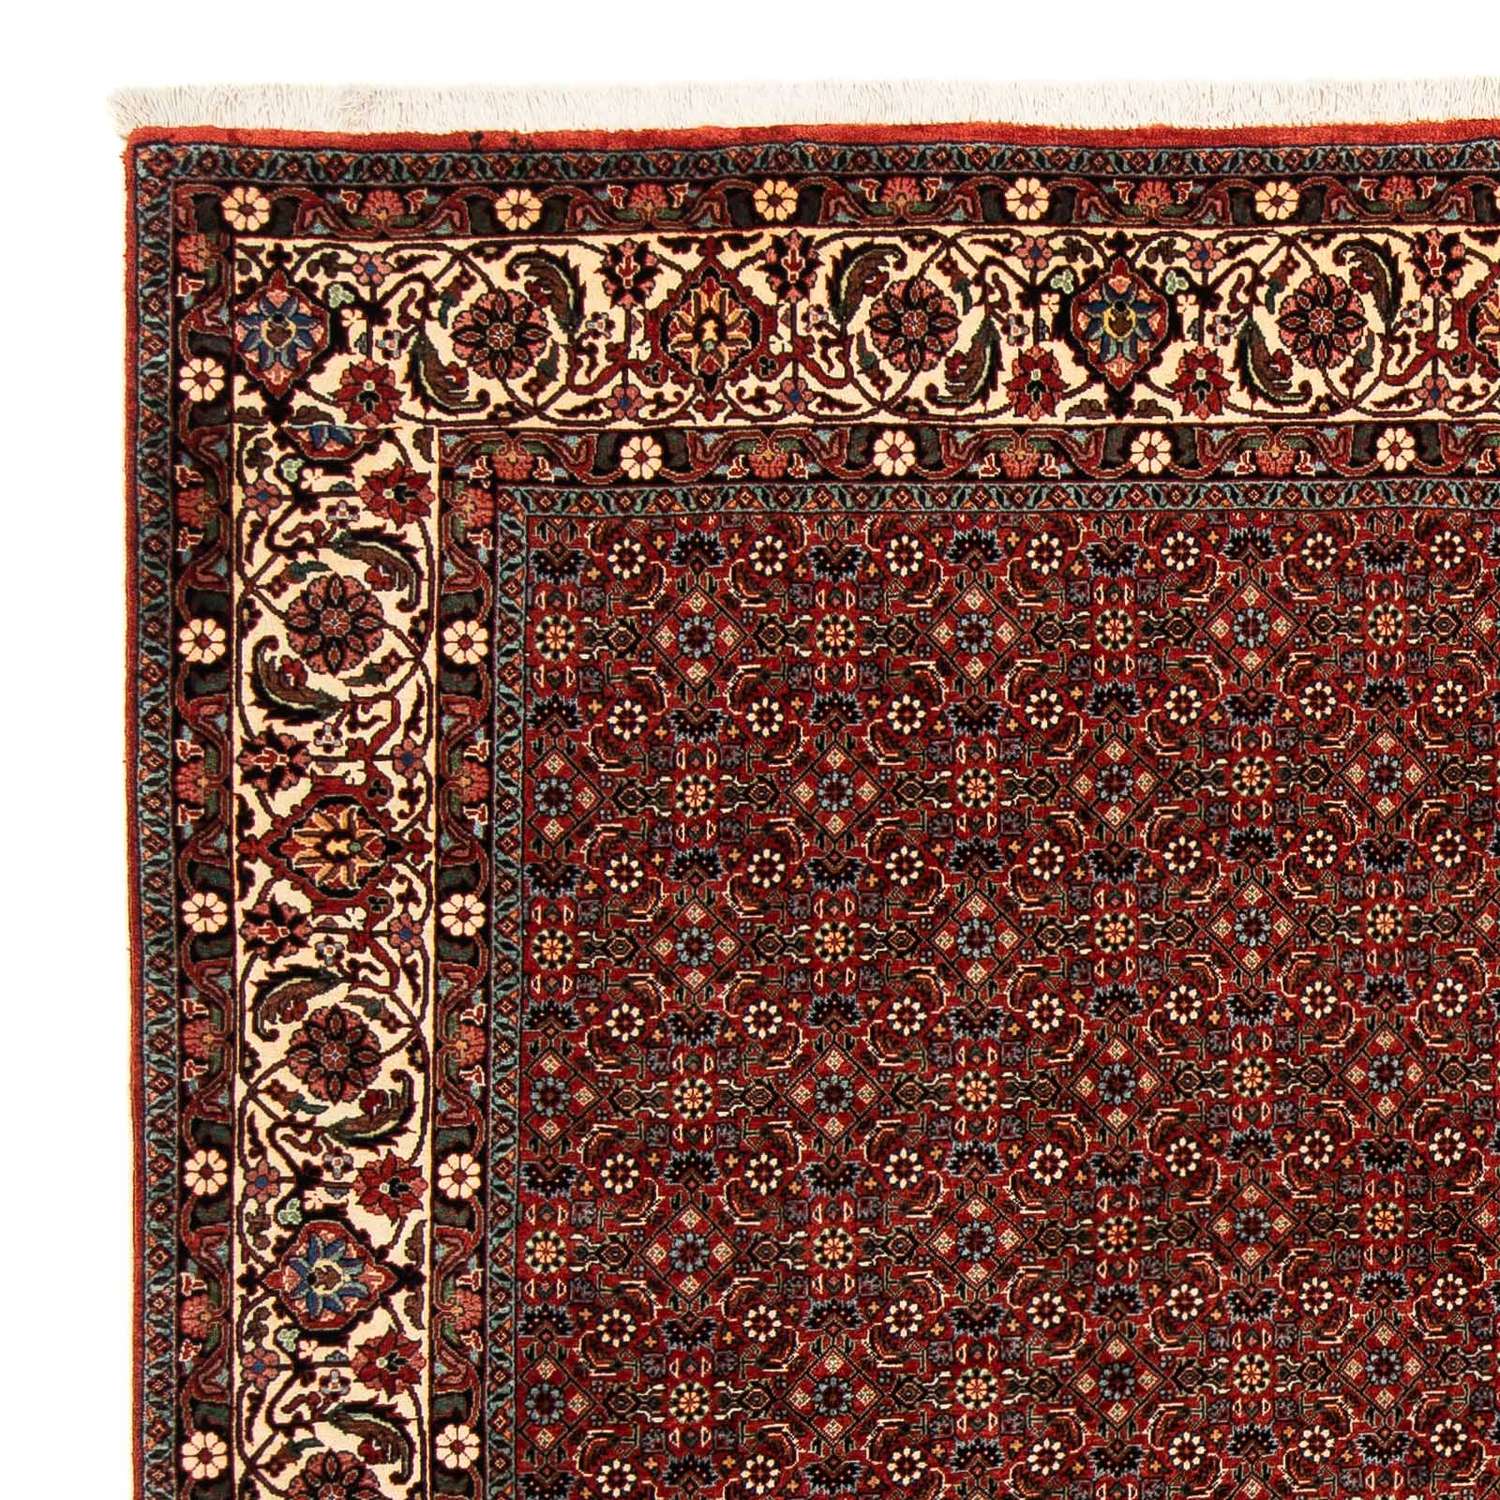 Tapis persan - Bidjar carré  - 203 x 197 cm - rouge foncé